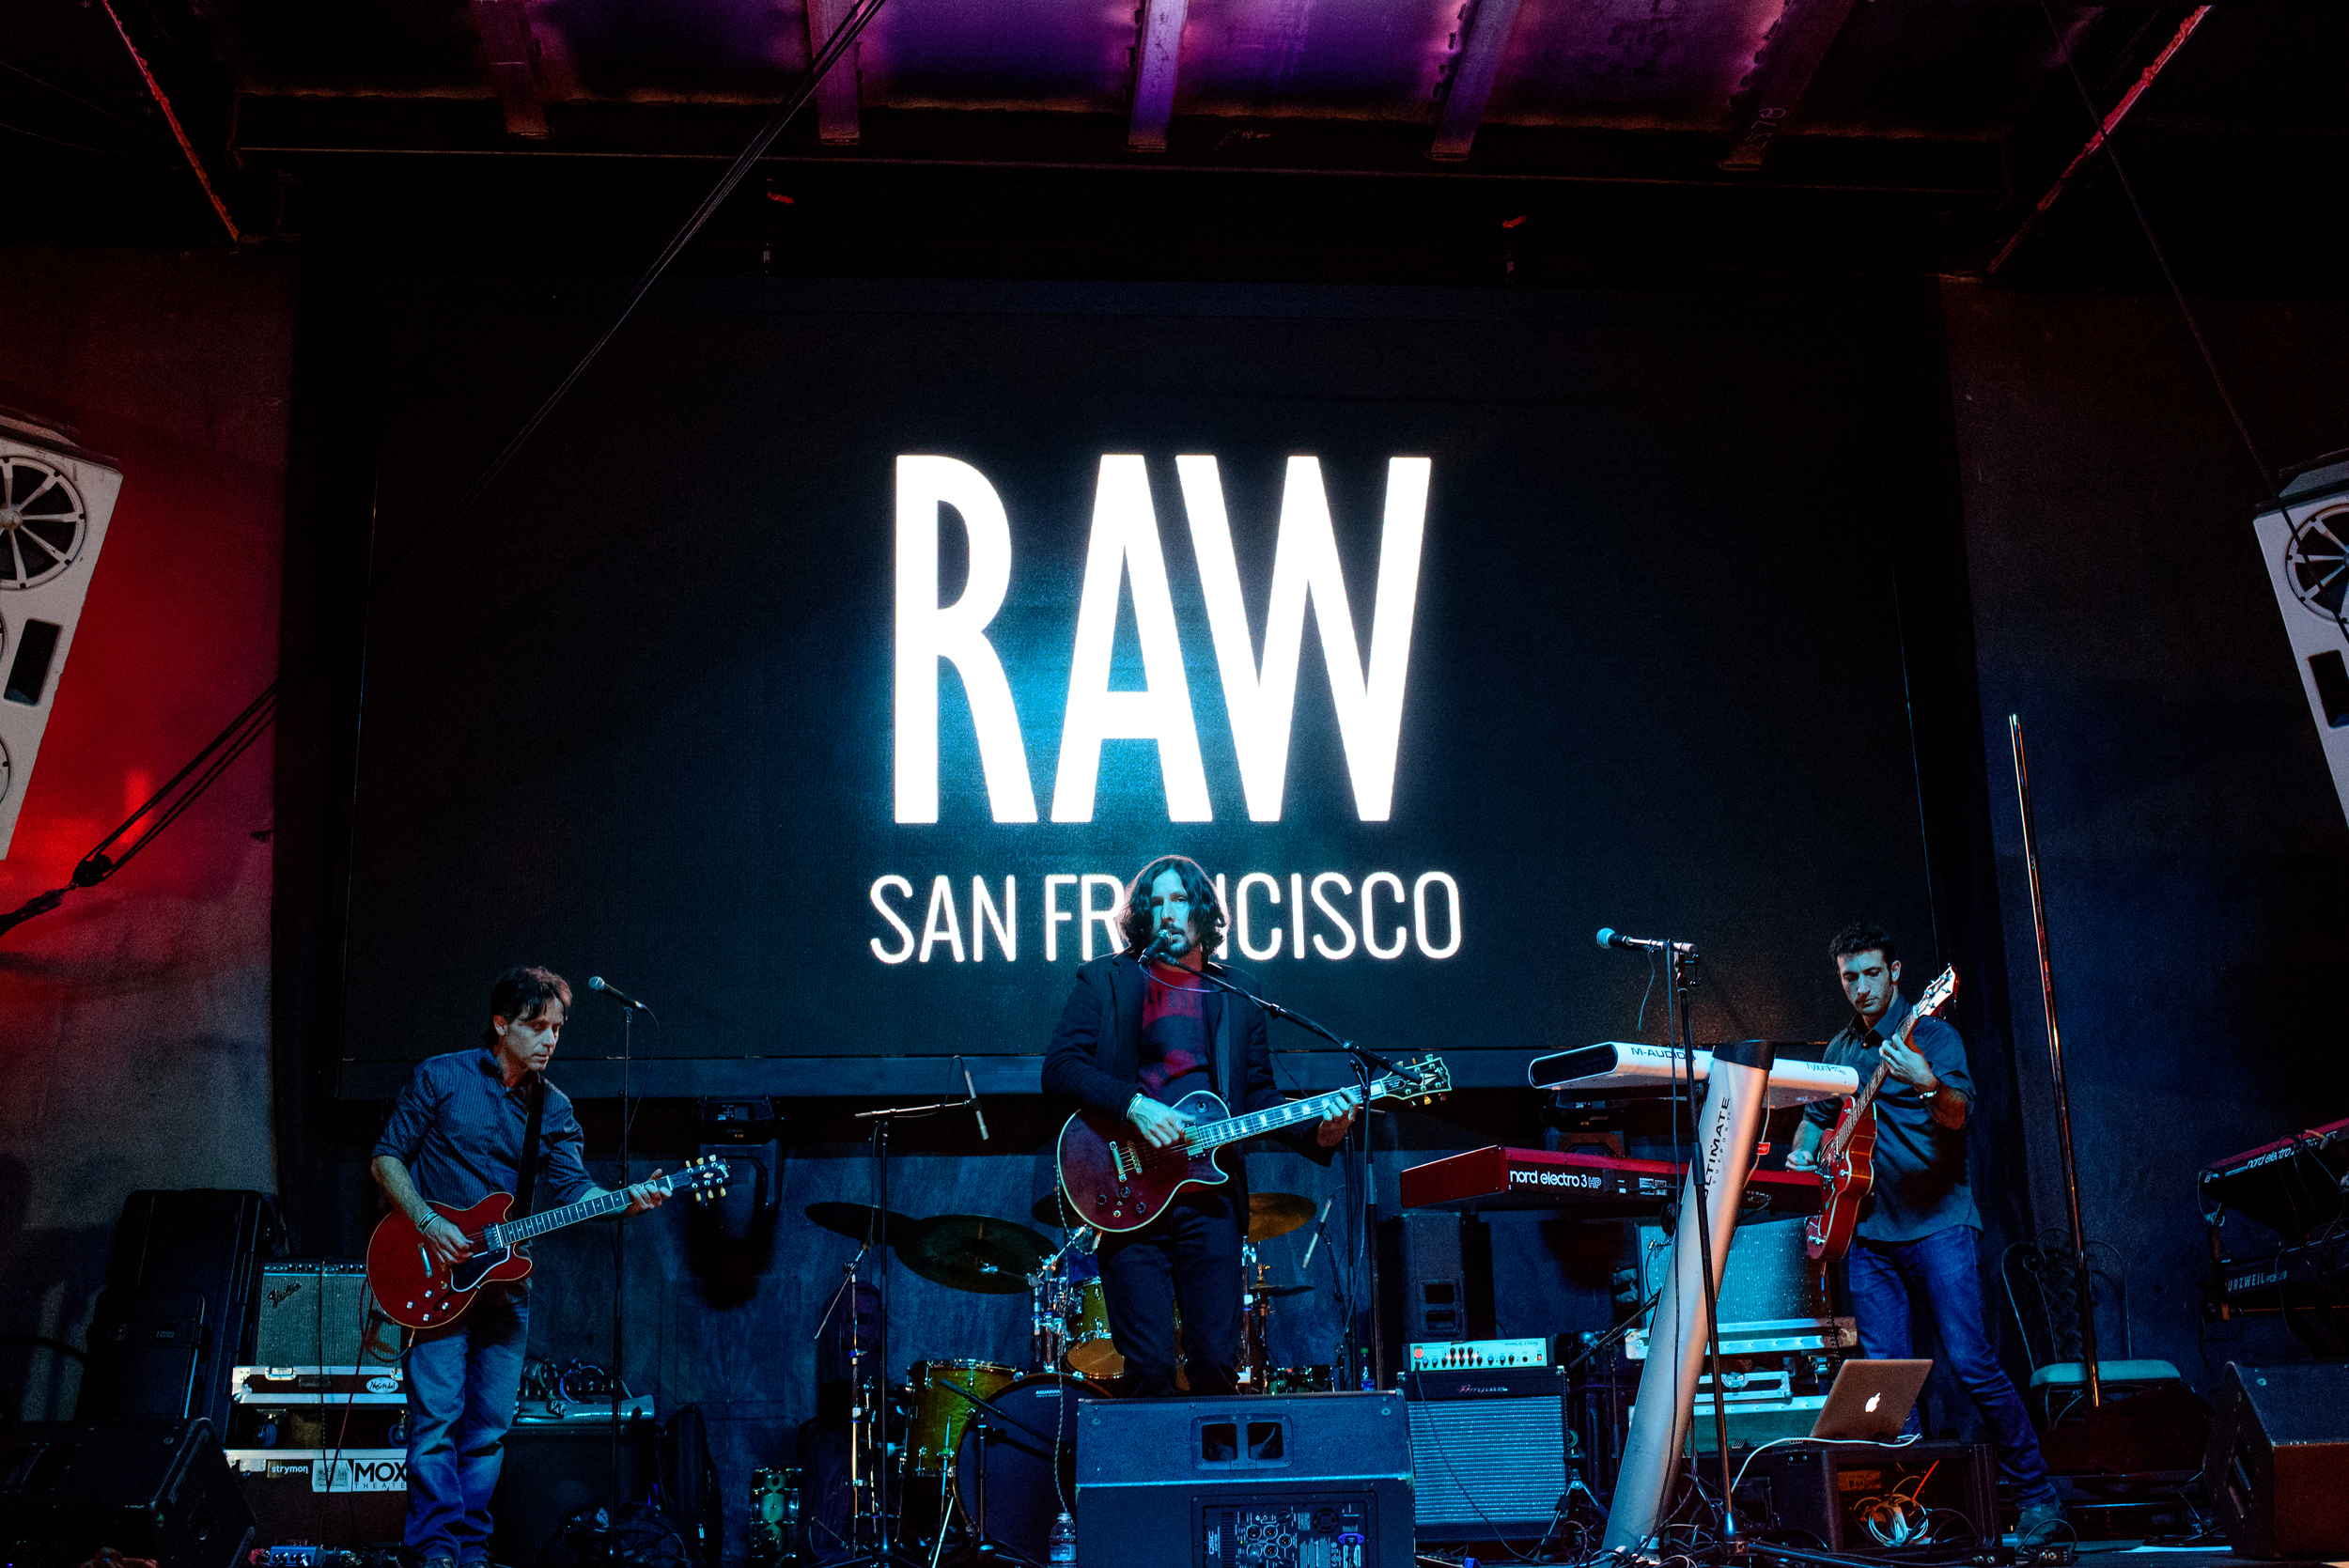 Live at RAW SF Showcase 1-27-16